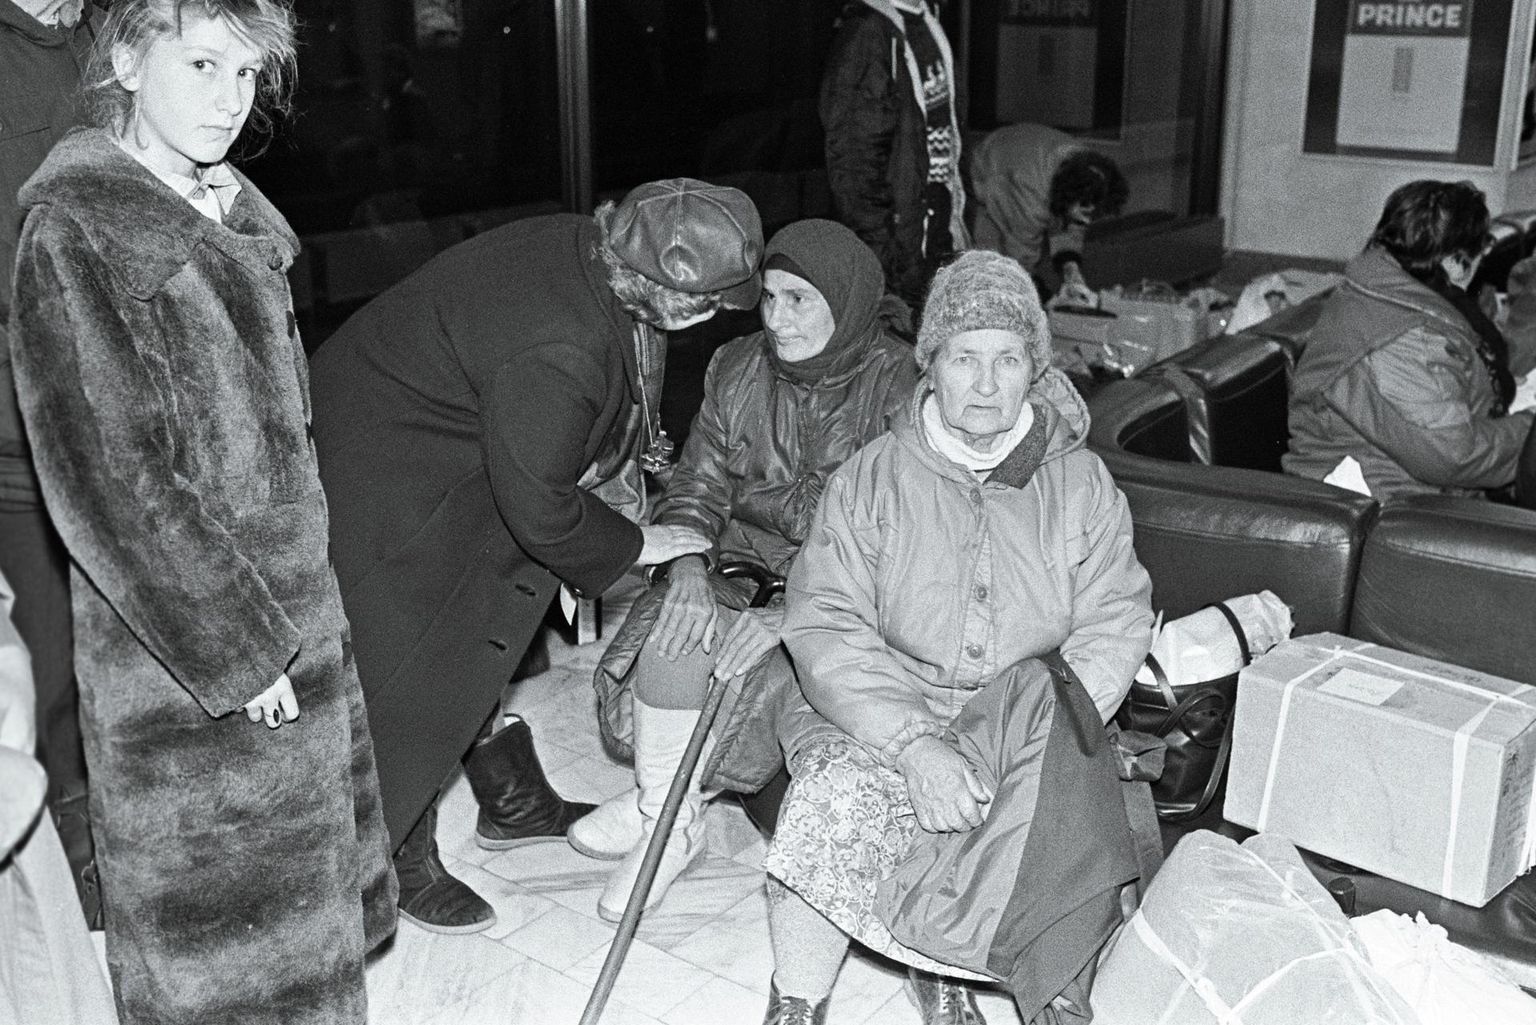 Abhaasiast saabunud põgenikud 1992. aasta 25. oktoobril Tallinna lennujaamas.

 